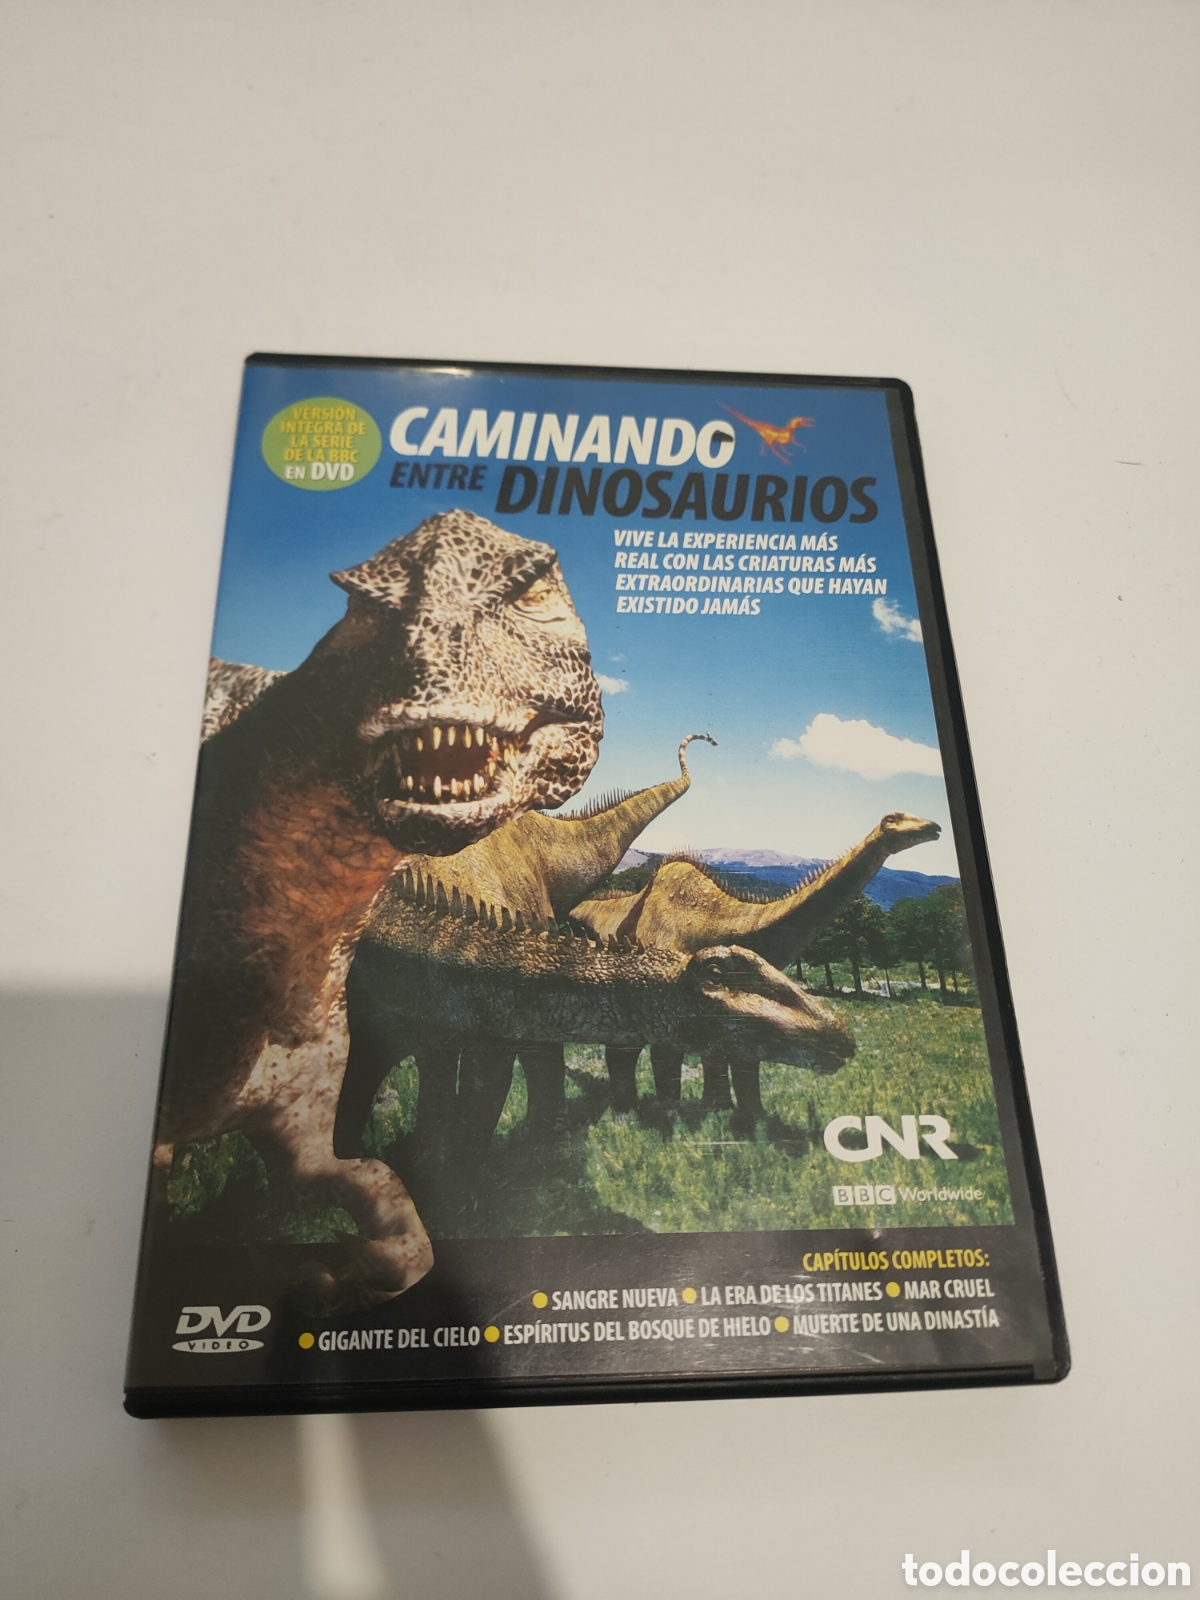 s817 caminando entre dinosaurios dvd segundaman - Compra venta en  todocoleccion